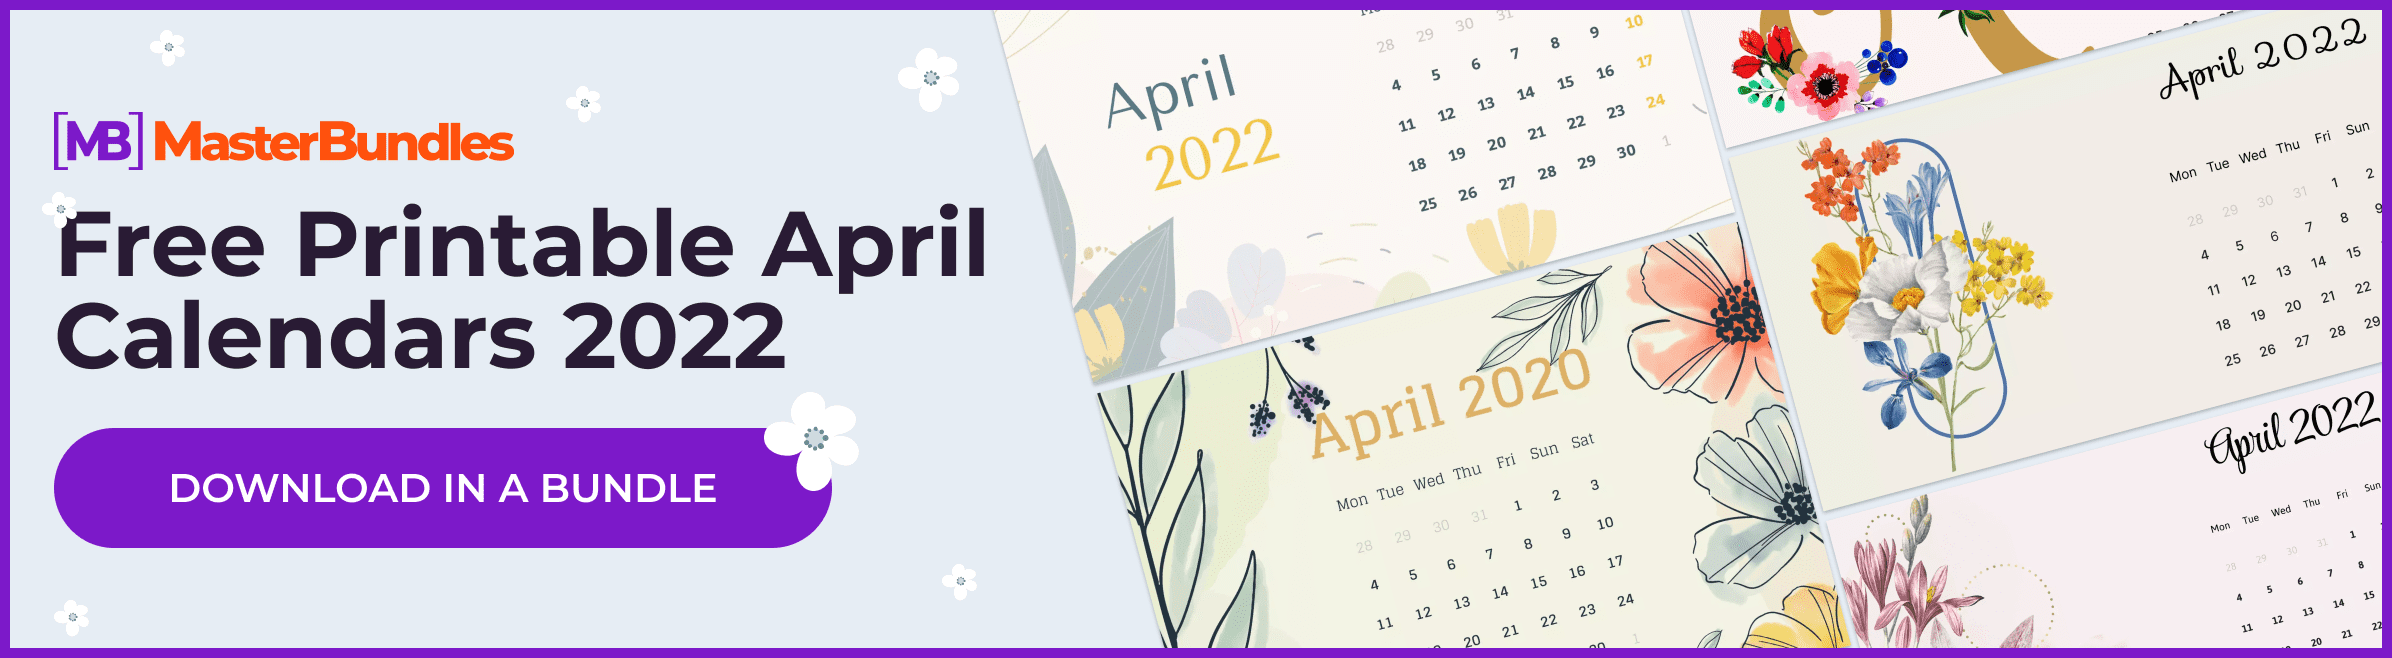 Free Printable April Calendars.